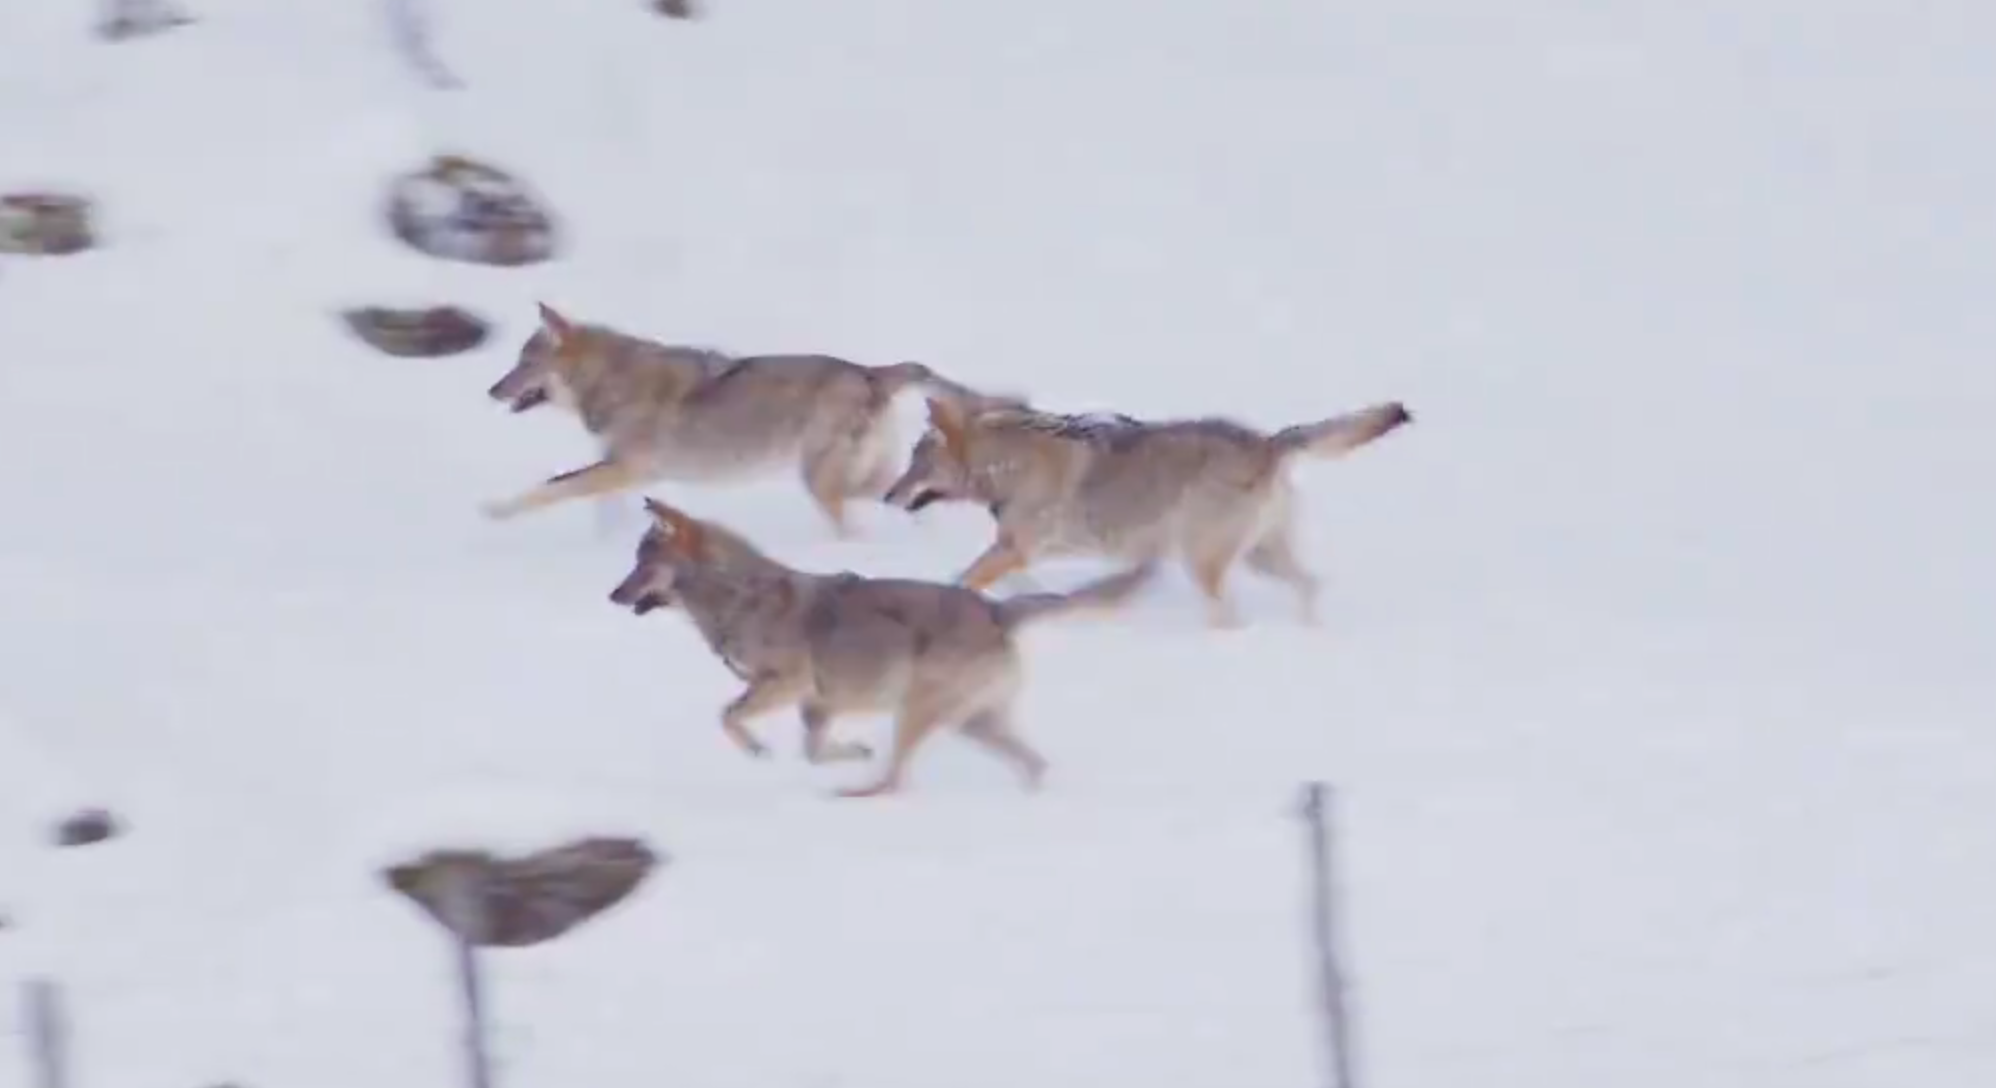 Tre lupi affamati attaccano un cane: ecco come è andata a finire [VIDEO]